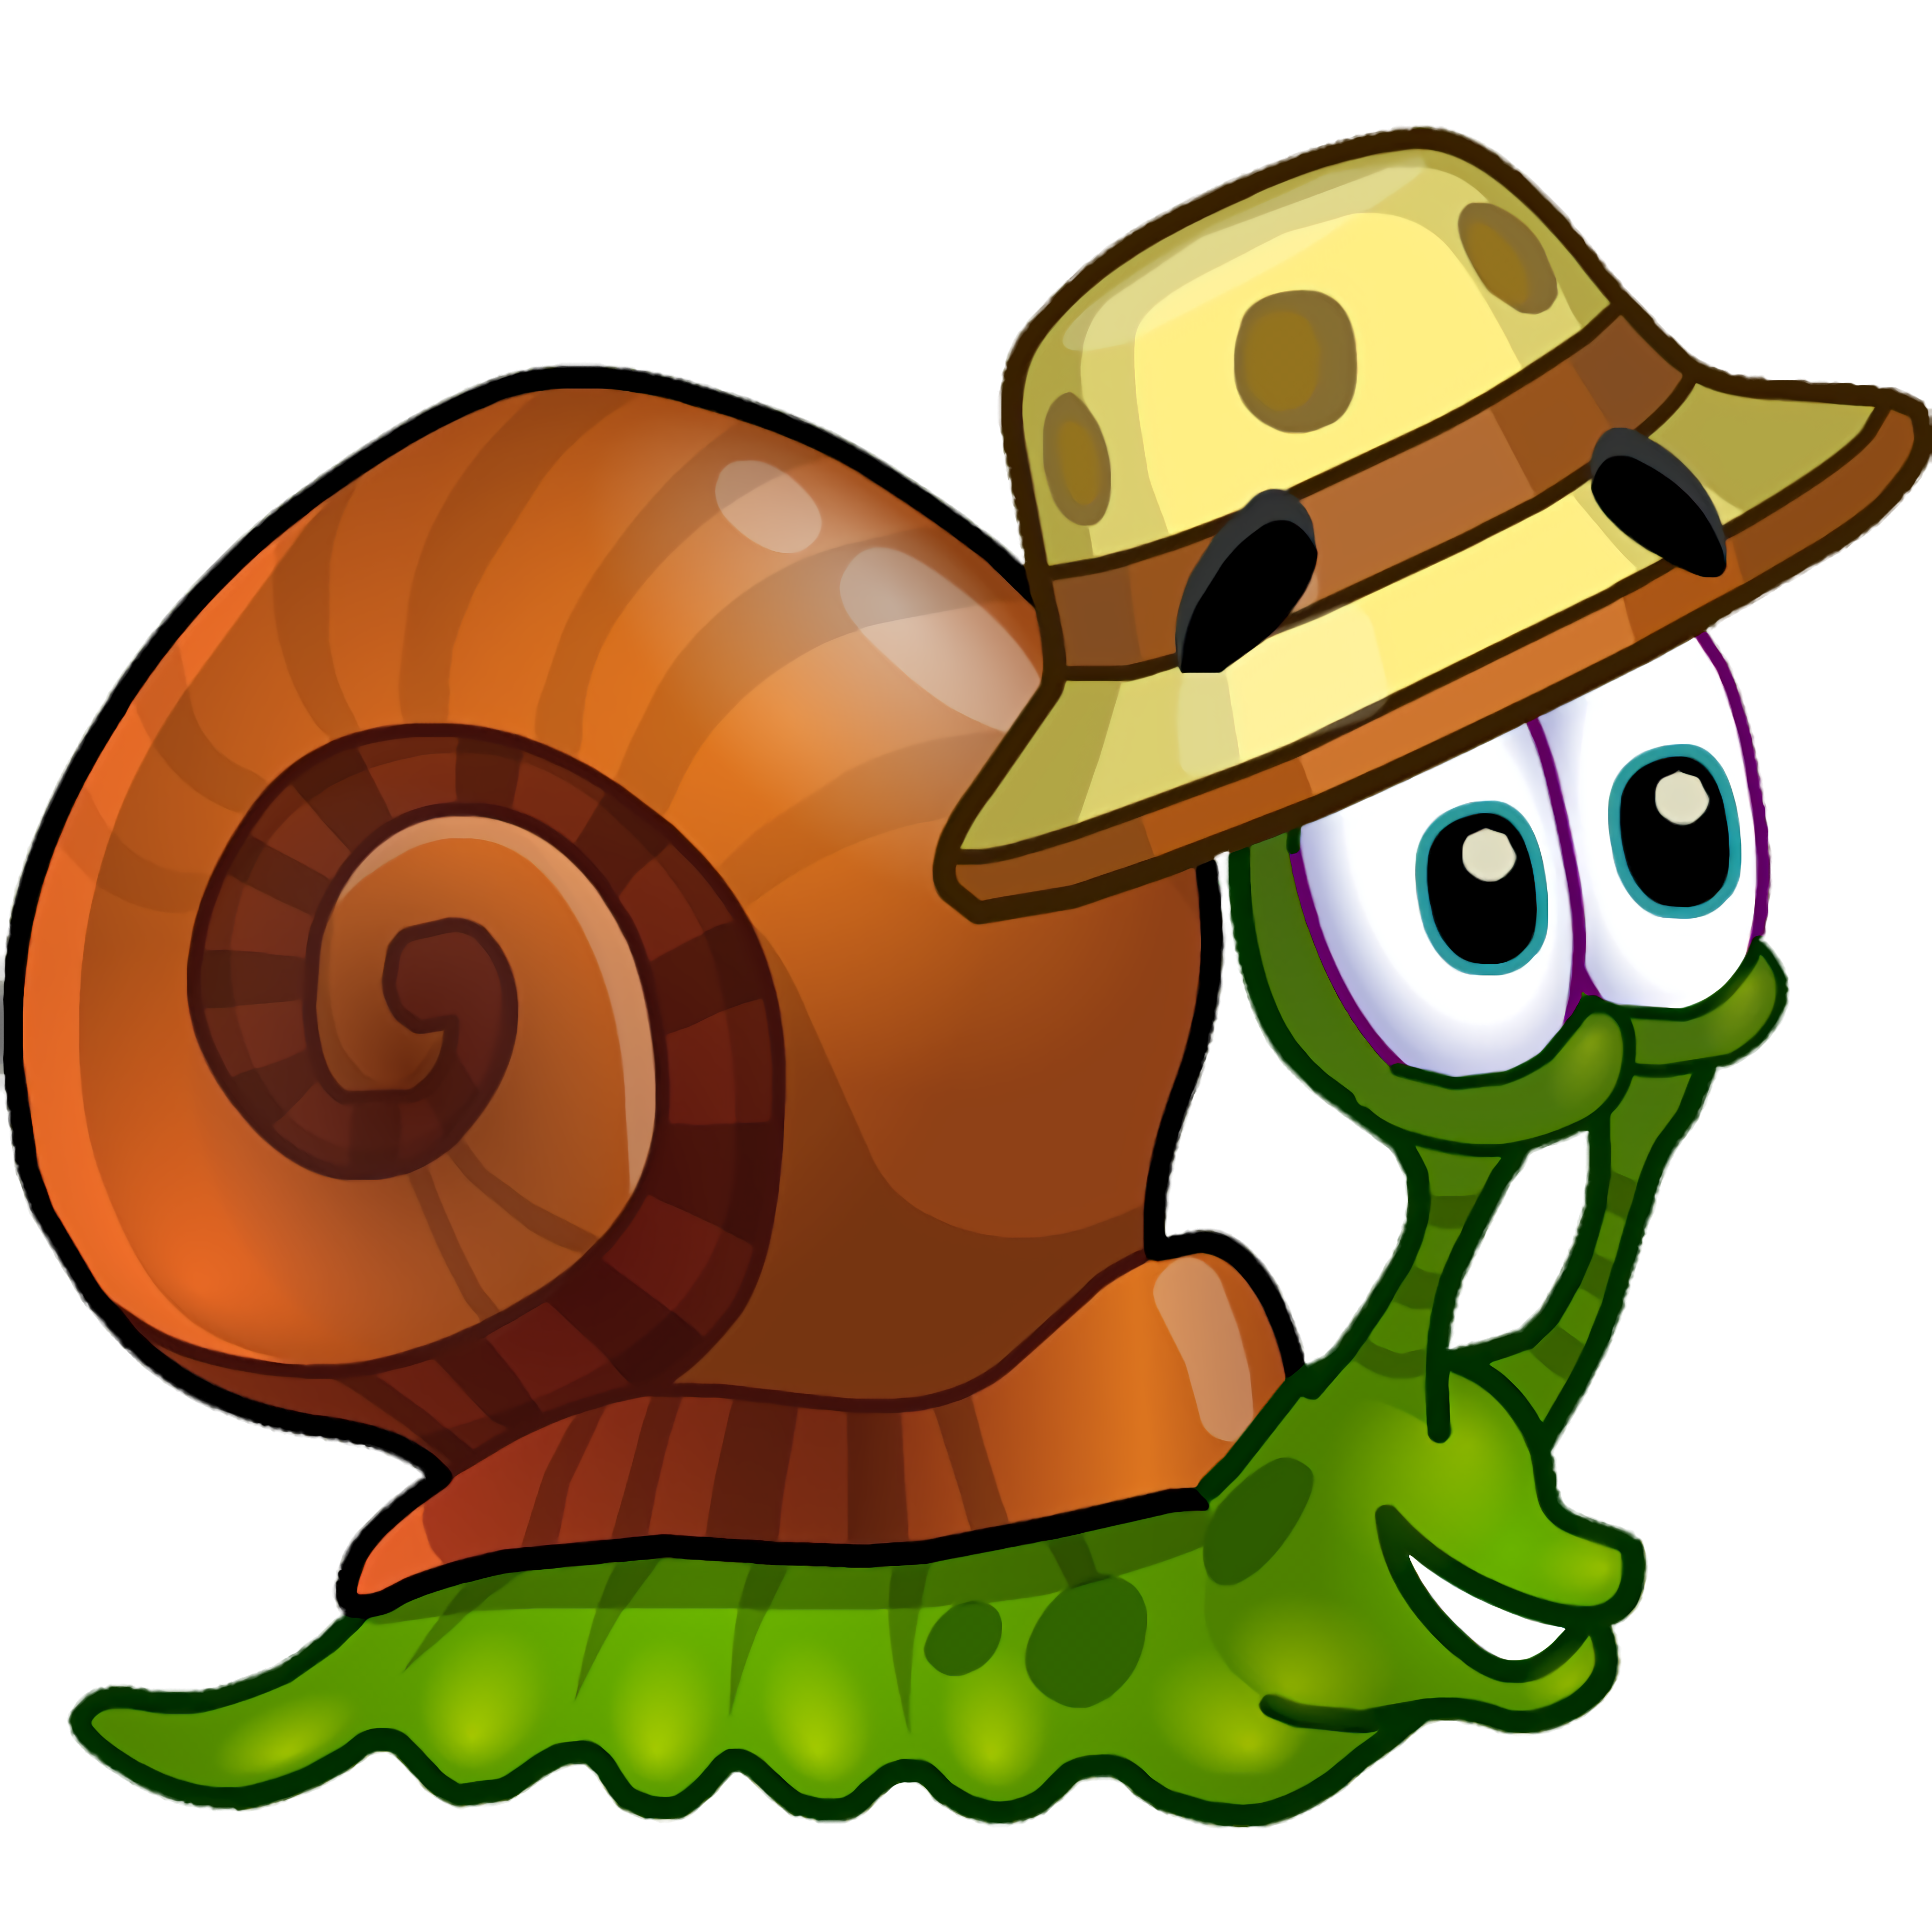 Игры где улитка. Улитка Боб 3 (Snail Bob 3). Снаил Боб. Snail Bob 2 (улитка Боб 2). Snail Bob (улитка Боб) 6.